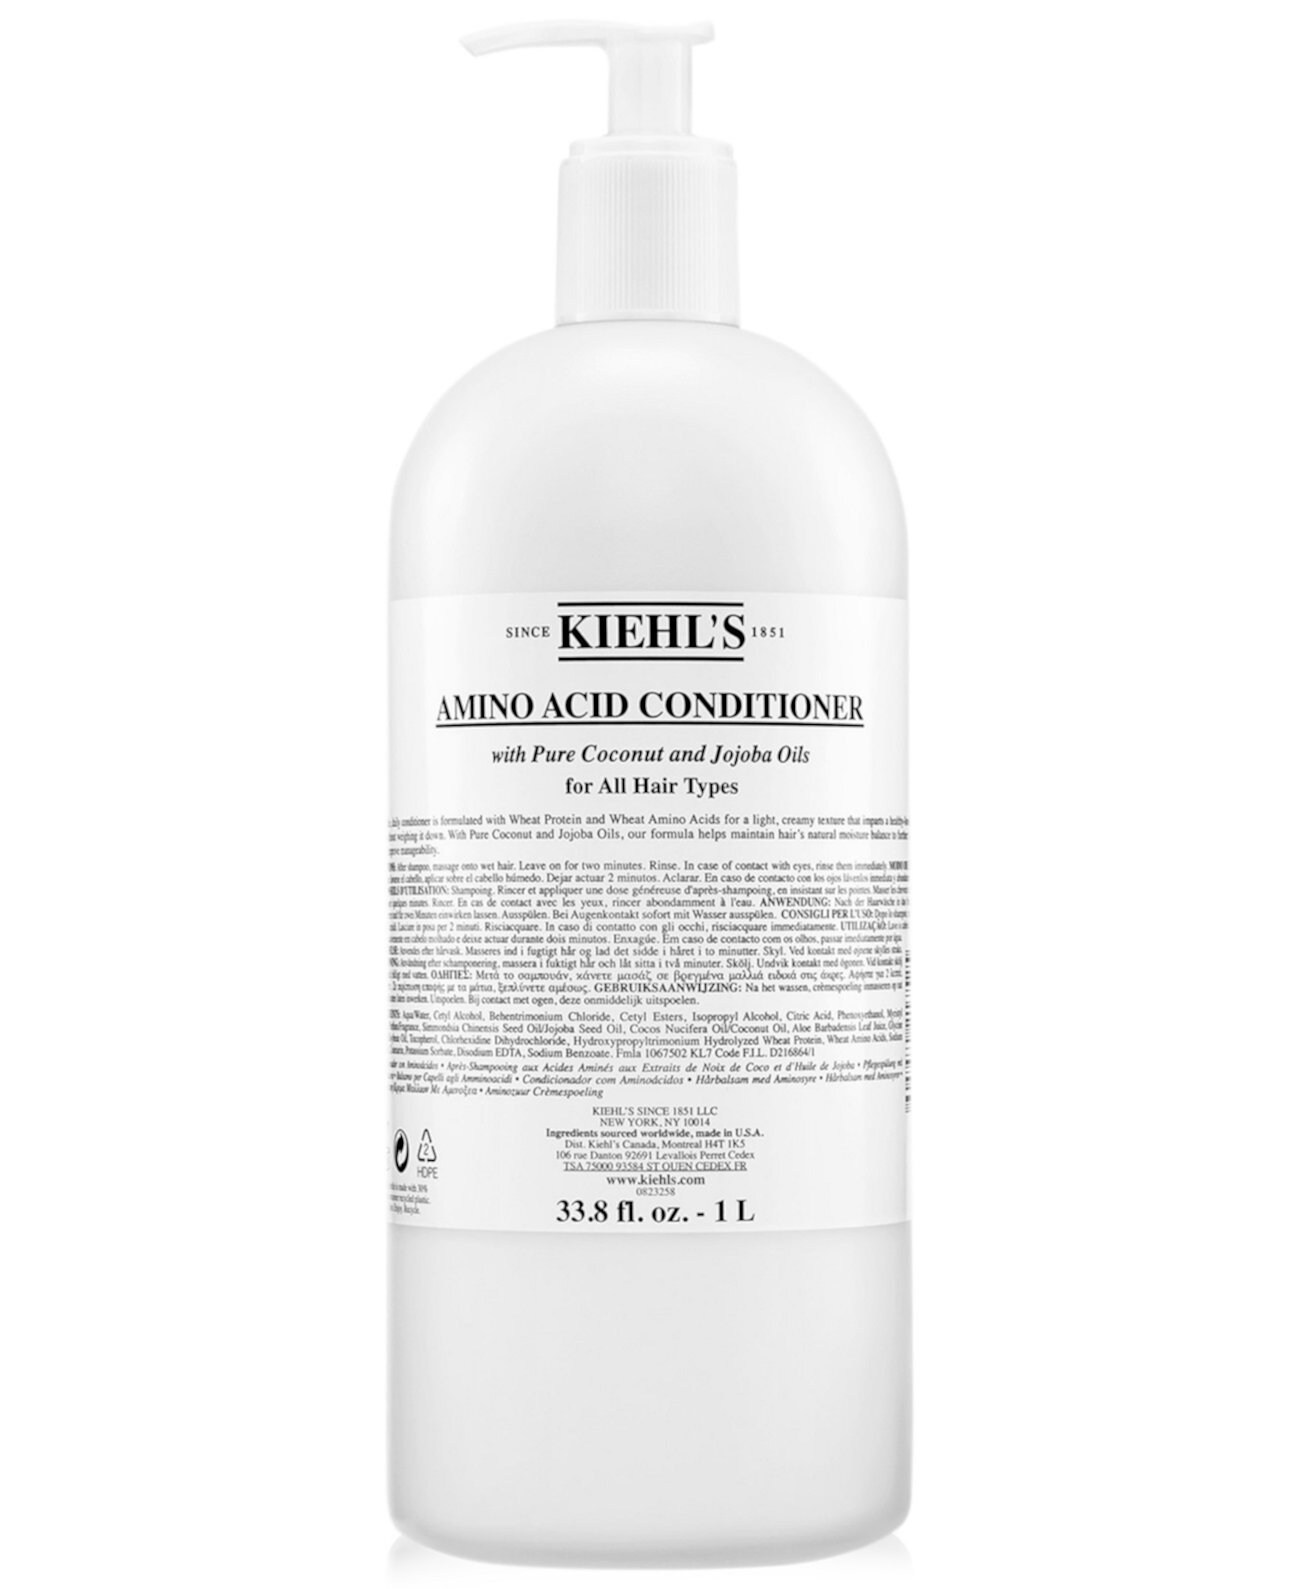 Аминокислотный кондиционер, 33,8 эт. унция Kiehl's Since 1851